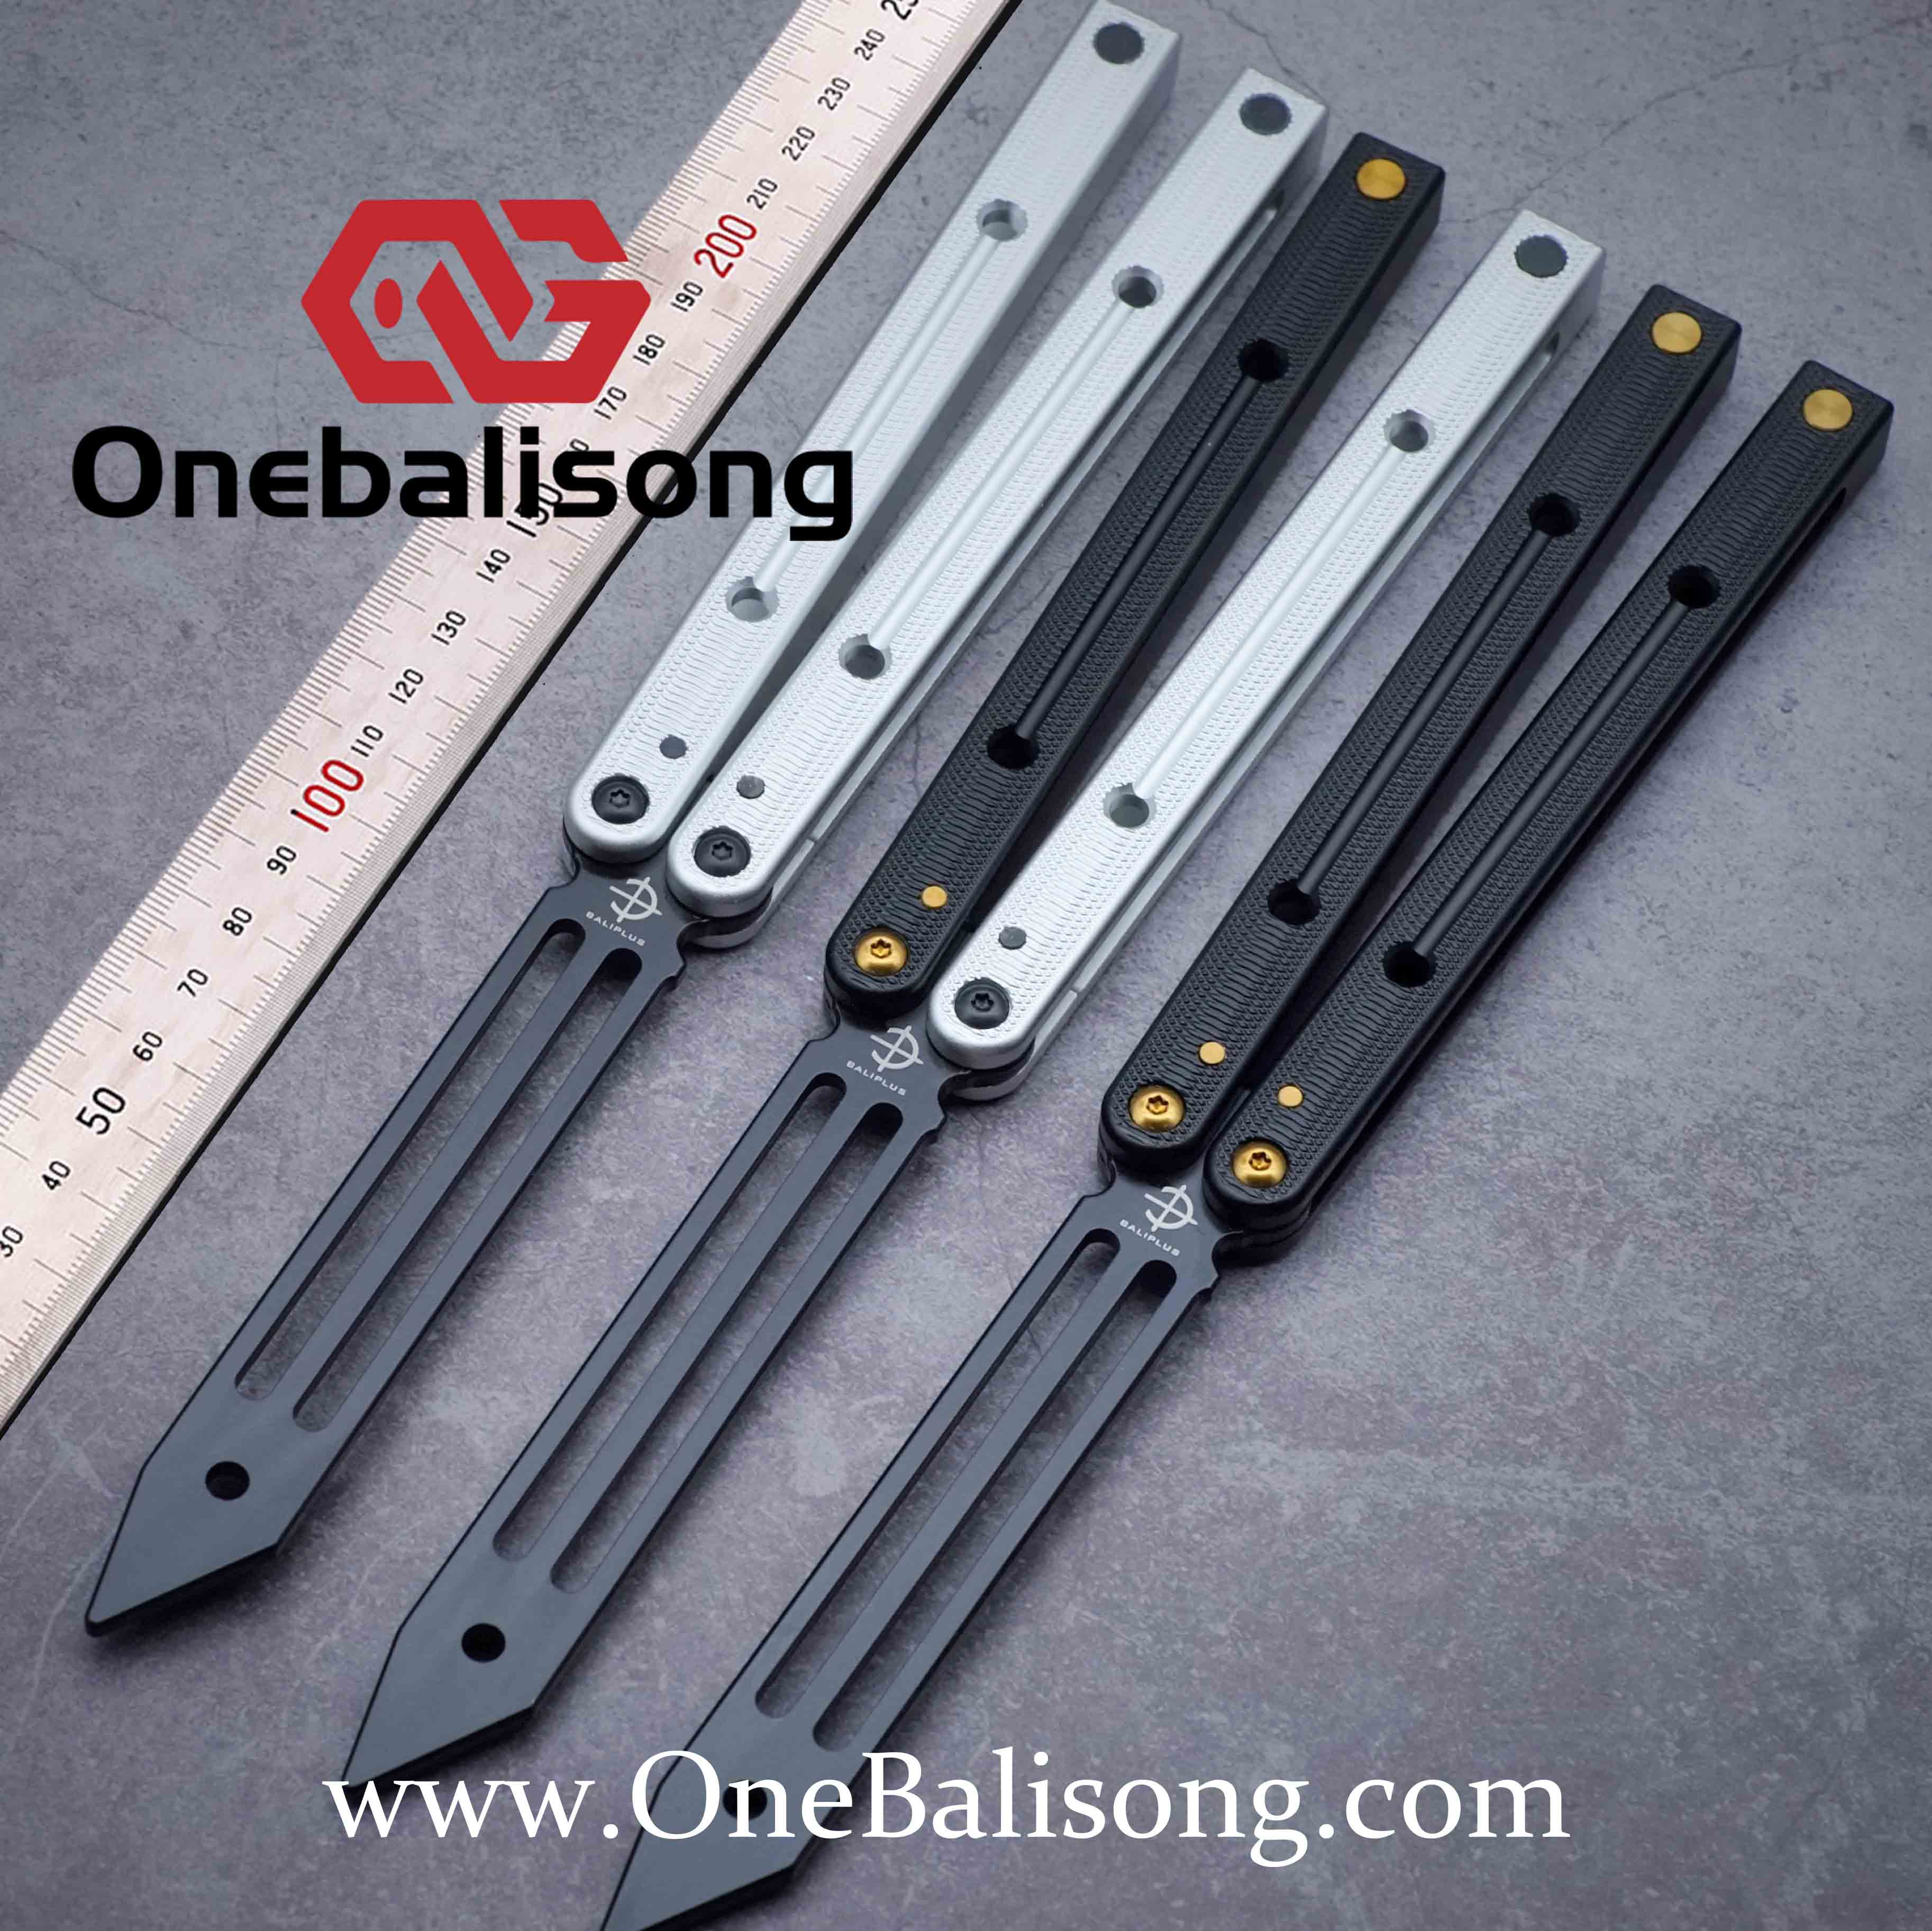 Baliplus Squidtrainer V4 Clone Aluminum-Onebalisong – One 